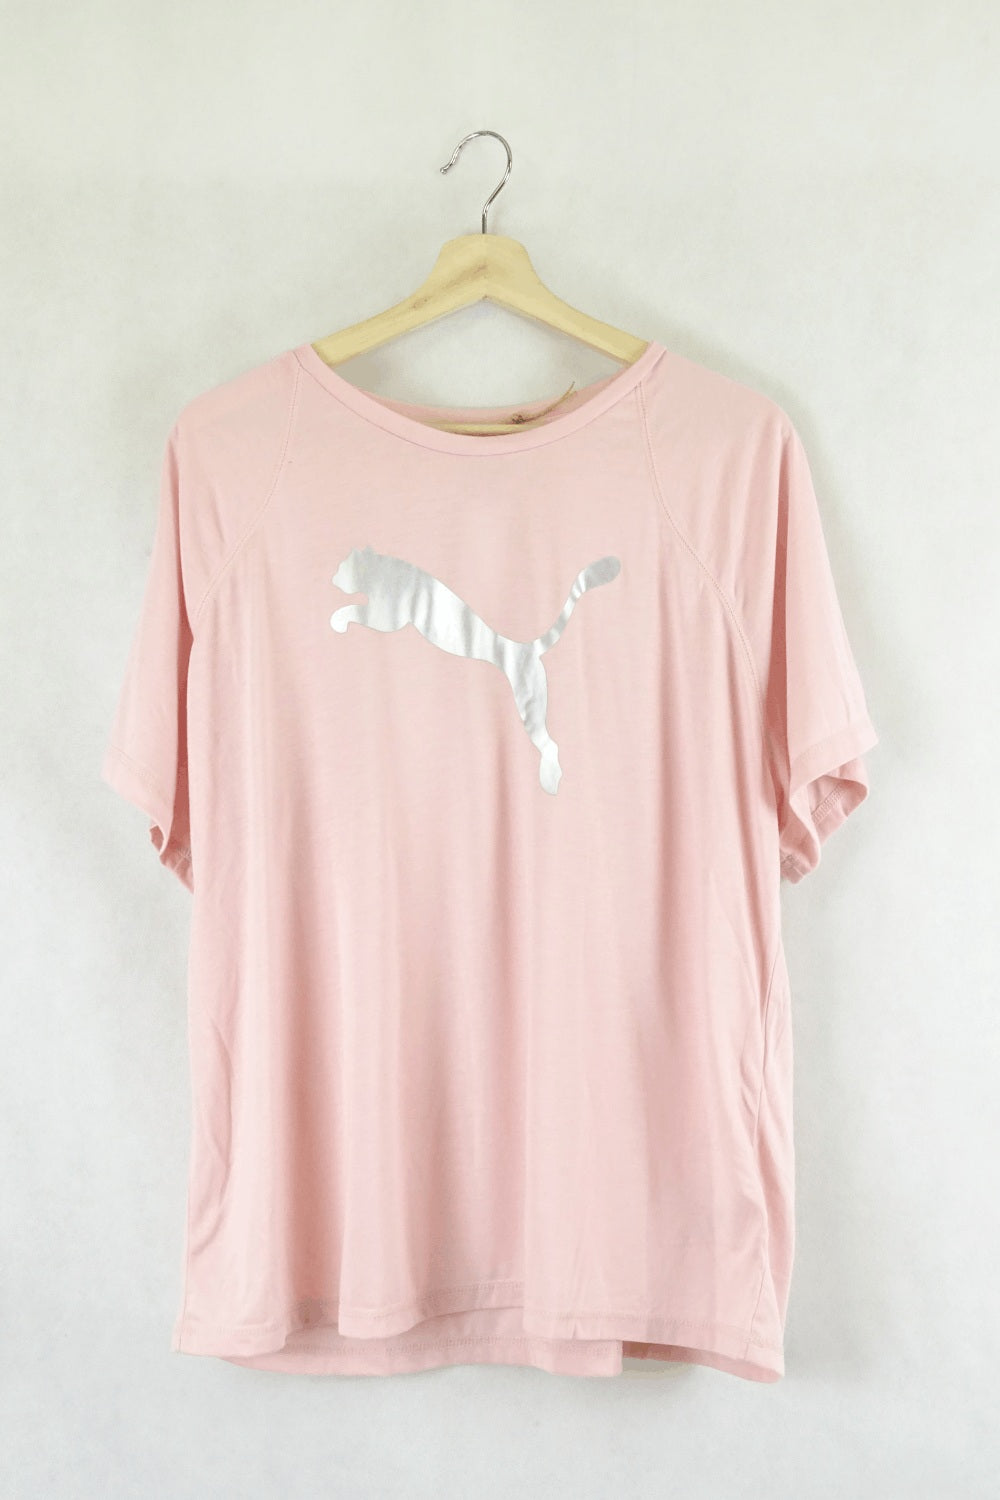 Puma Pink T-Shirt Xl